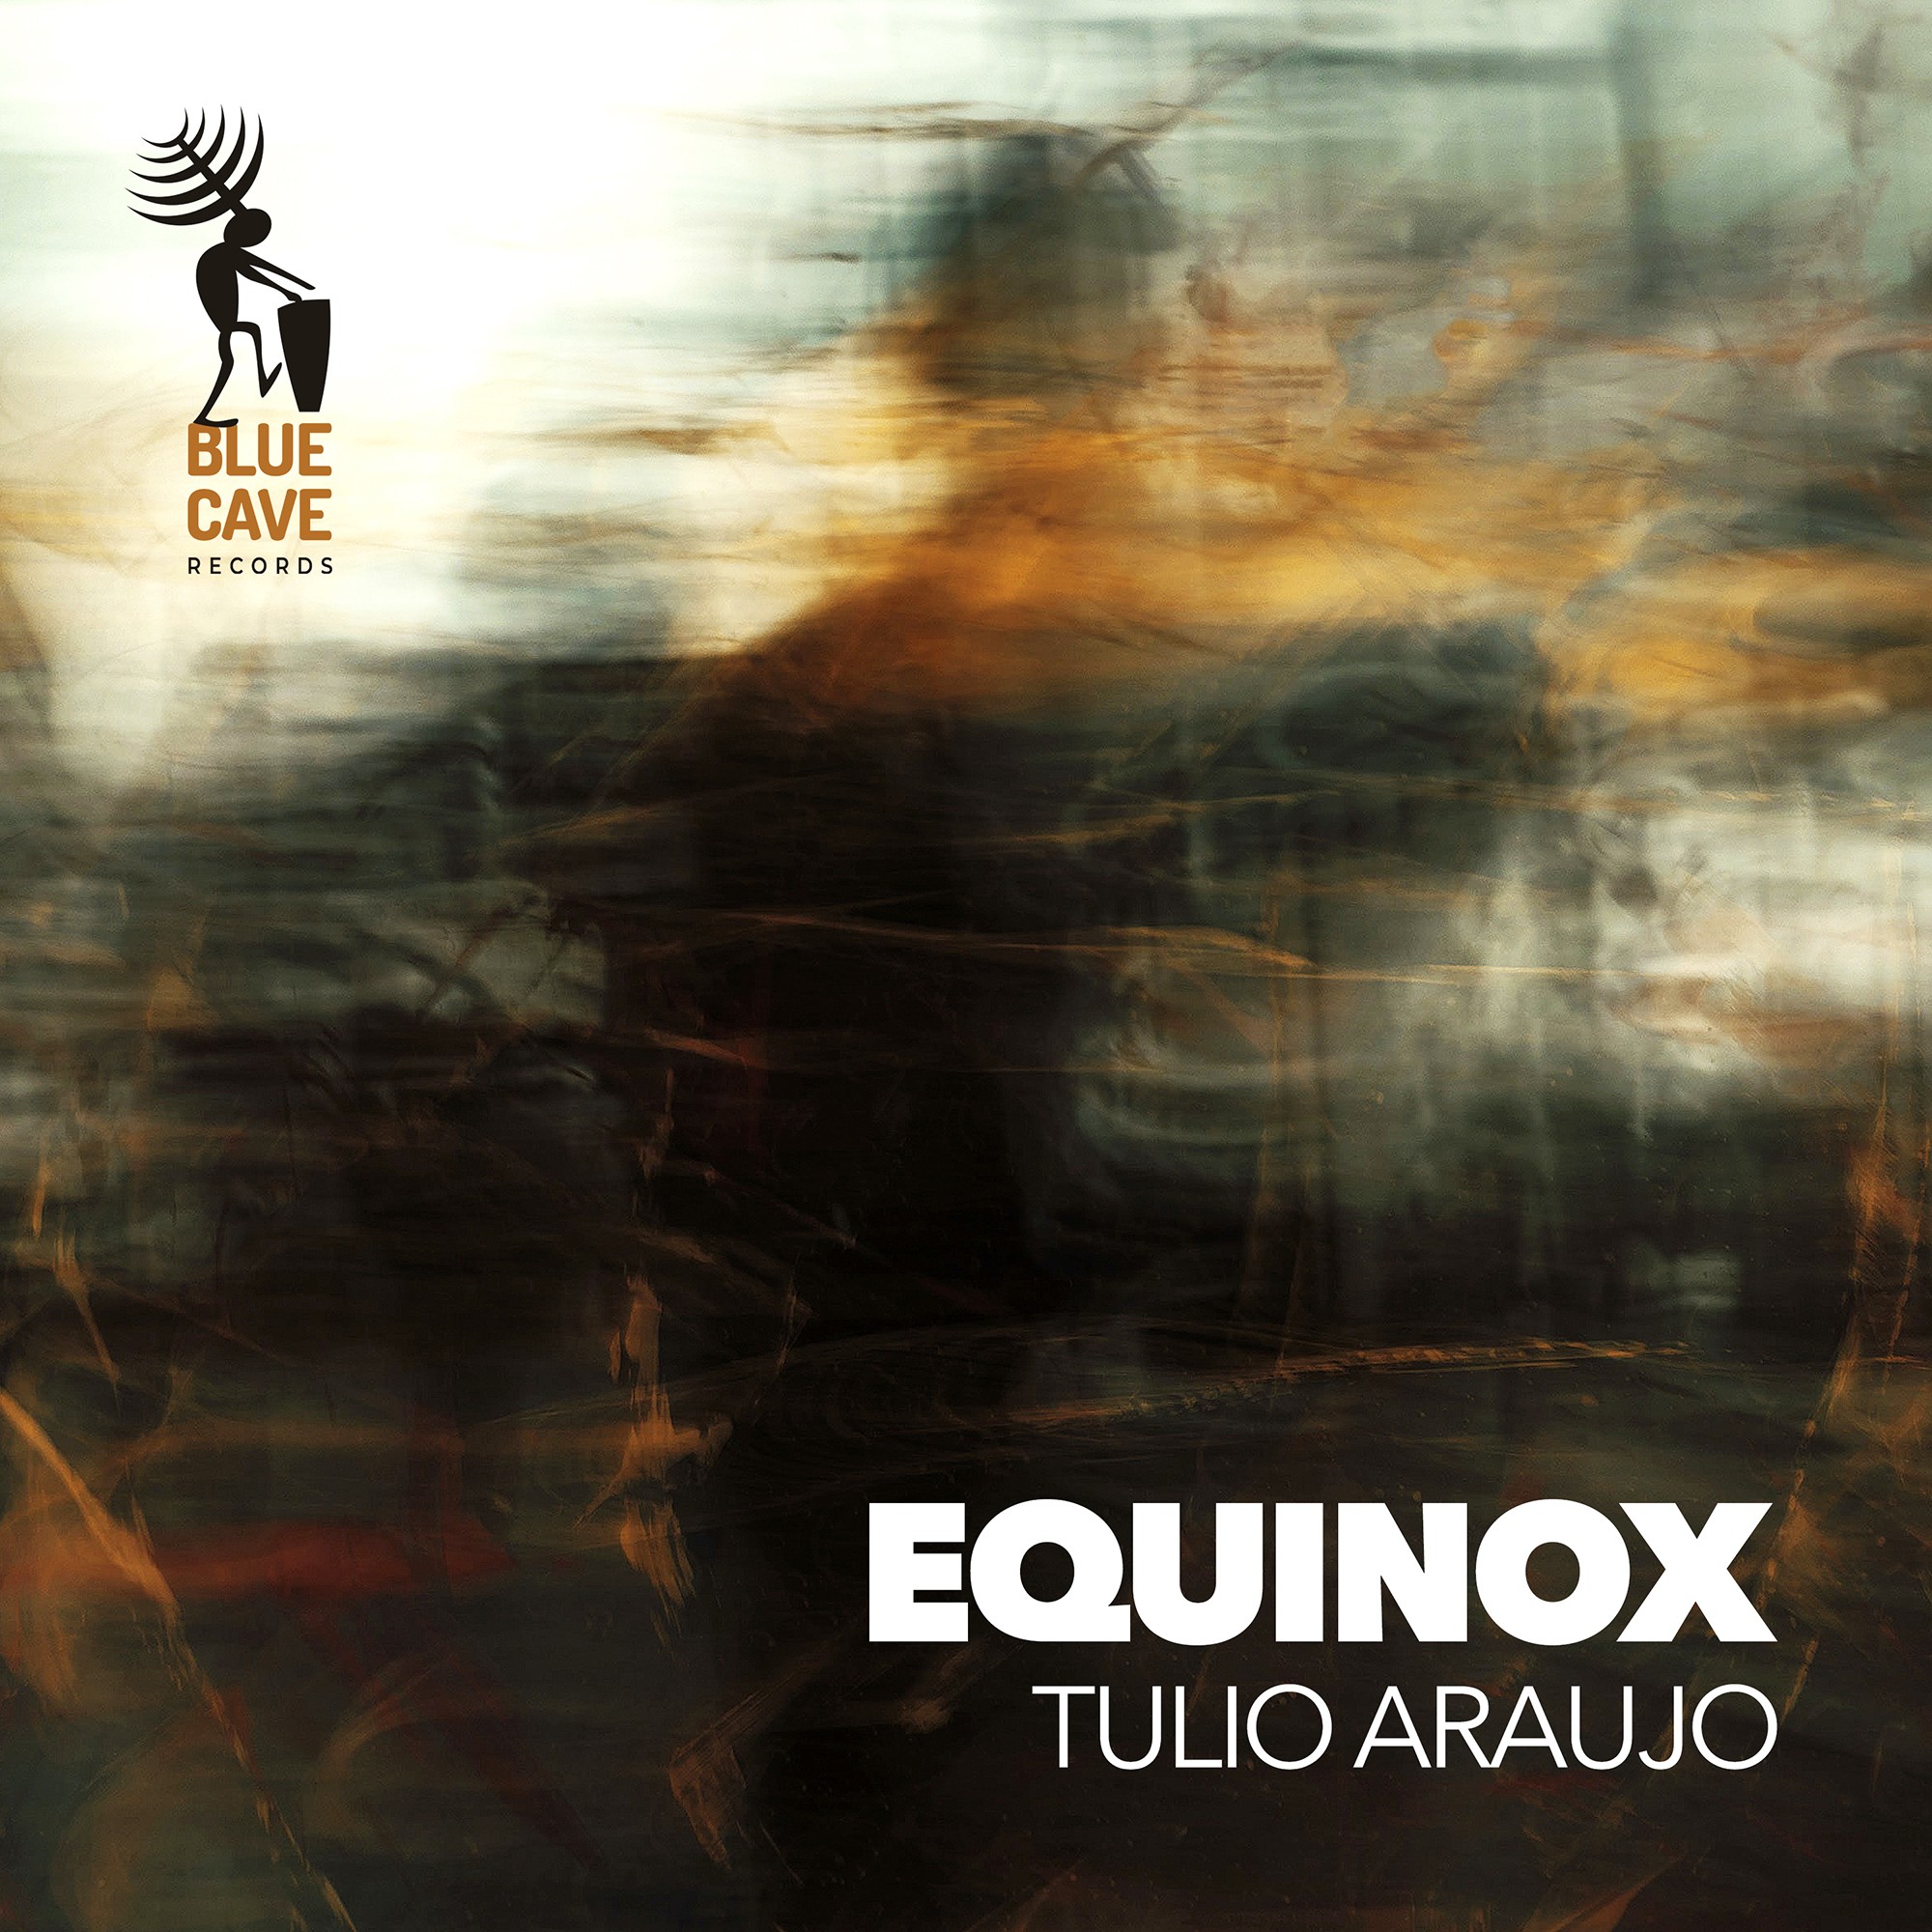 Tulio Araújo recria tema de John Coltrane no pandeiro em single que anuncia álbum com standards do jazz